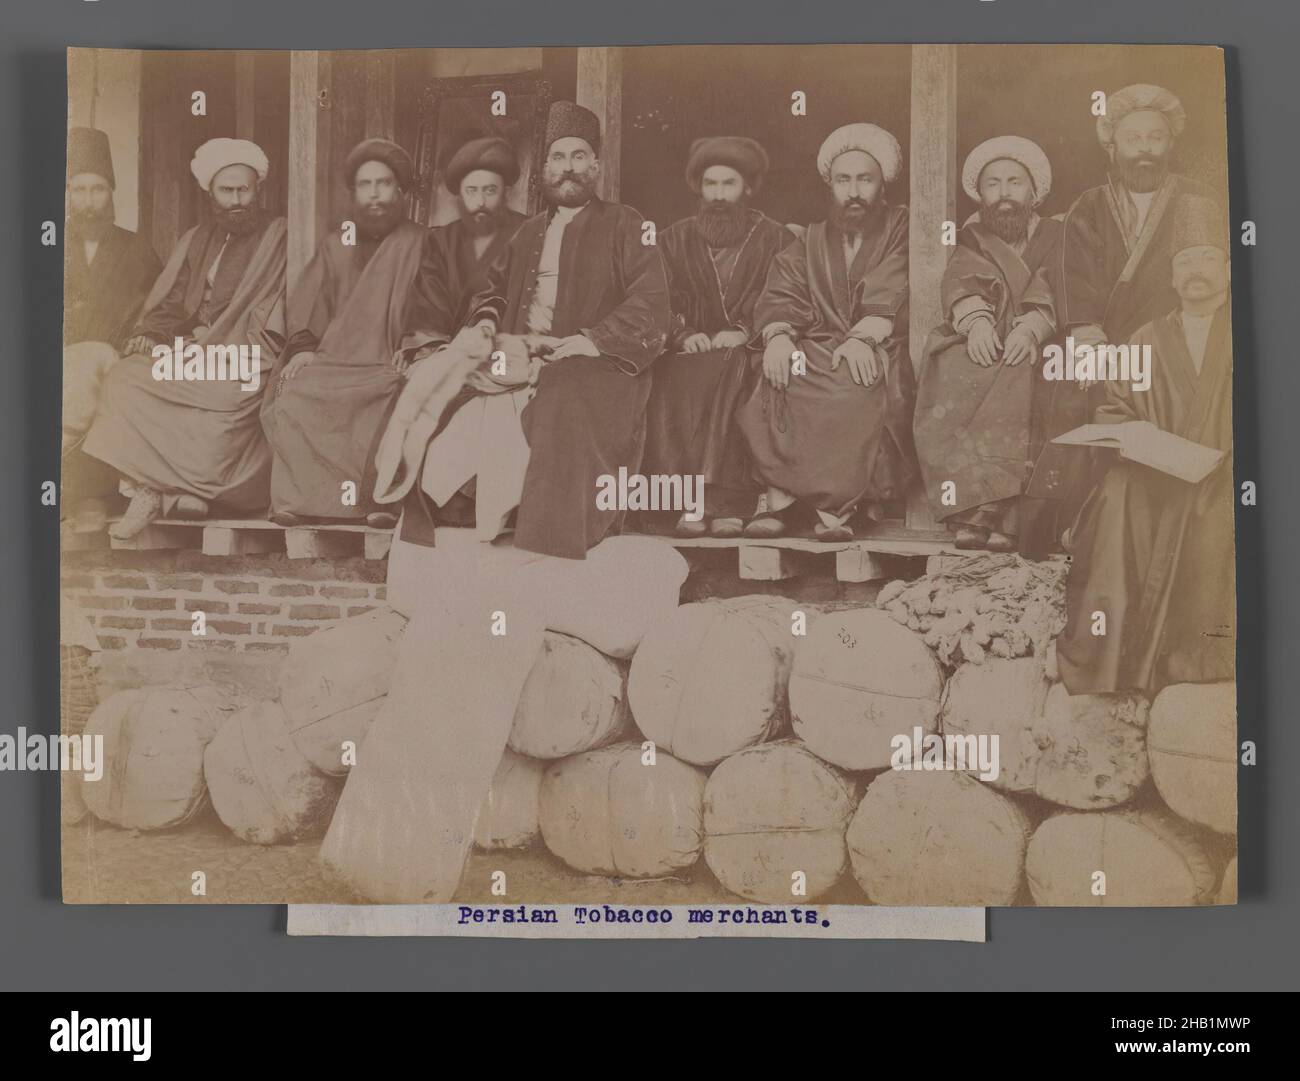 Perse Tobacco Merchants, l'une des 274 photographies anciennes, photographie argentée d'albumine, fin 19th-début 20th siècle, Qentra, période Qentra, 6 1/16 x 8 3/16 po, 15,4 x 20,8 cm Banque D'Images